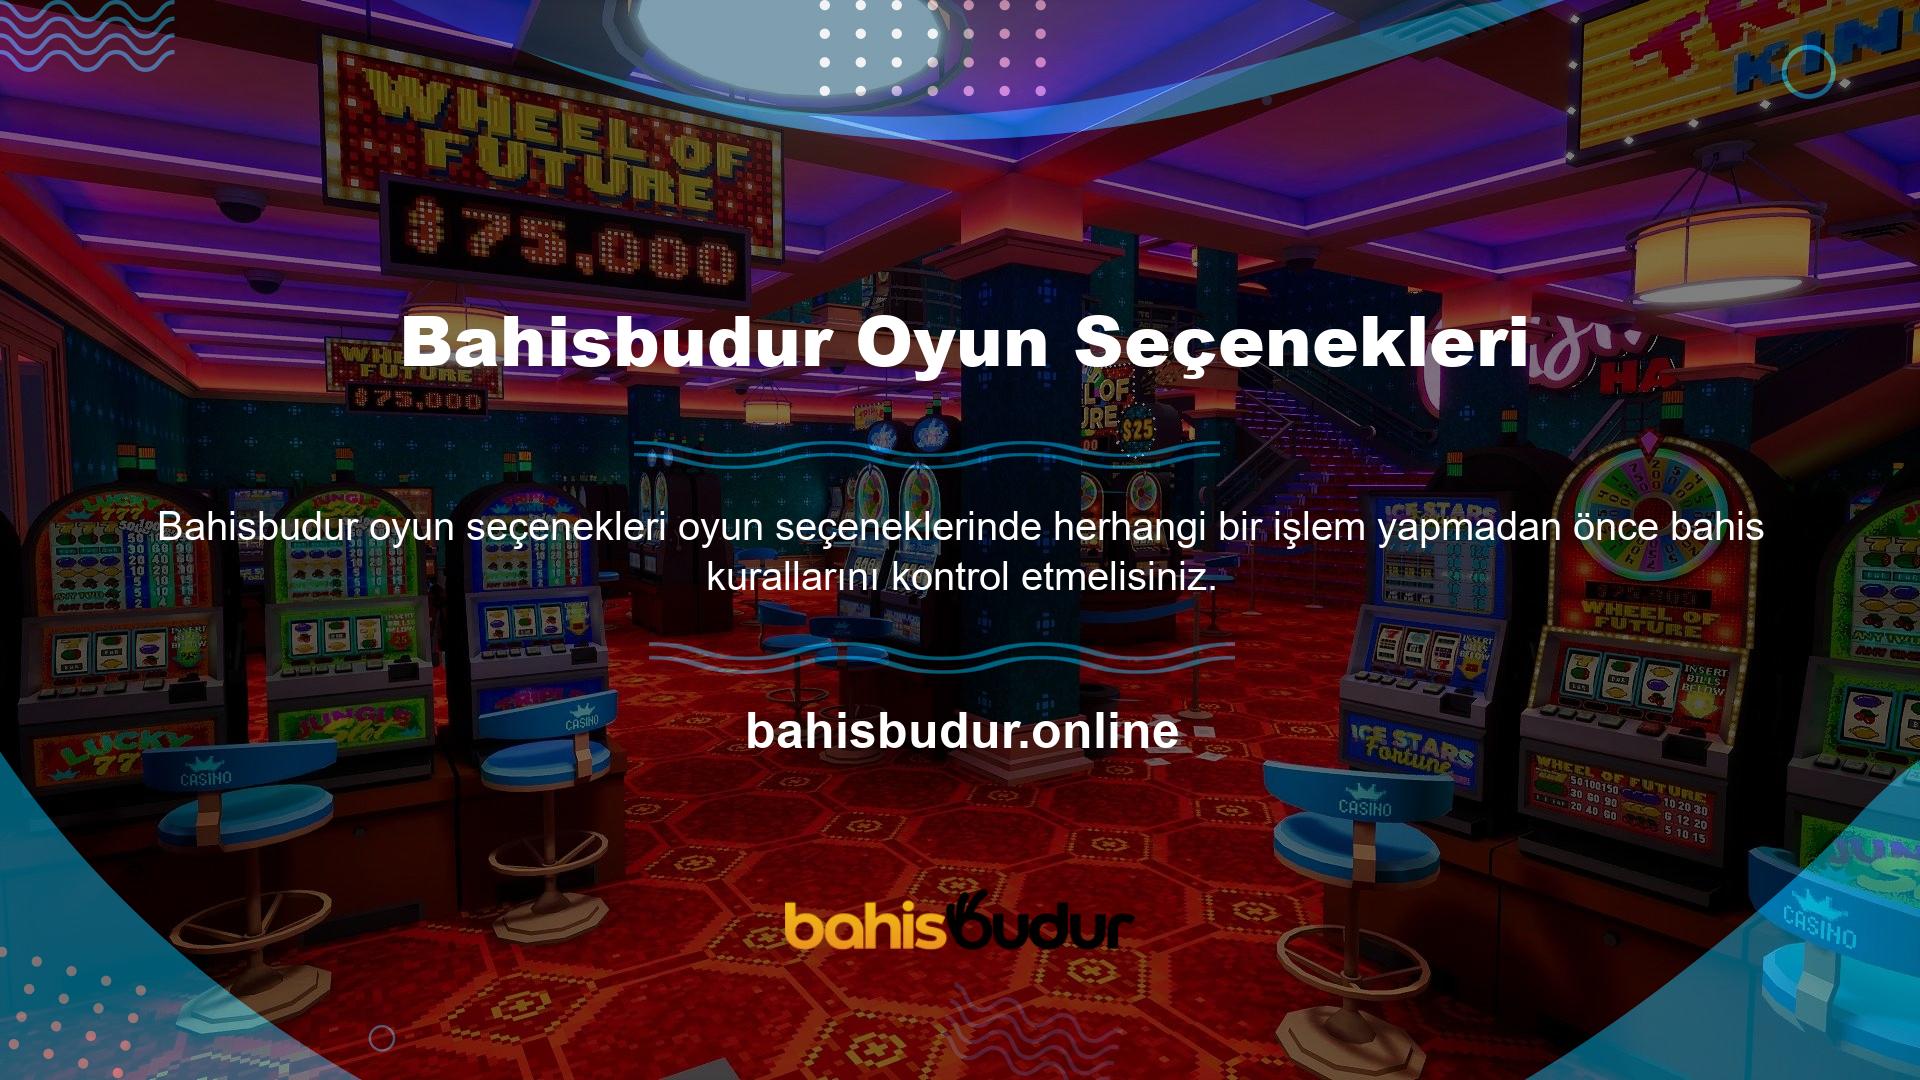 Bahisbudur casino oyunlarından bazıları şunlardır: Seçenekler arasında Tekel, Anlaşma veya Anlaşma Yok, Dreamcatcher ve Hızlı Rulet bulunur